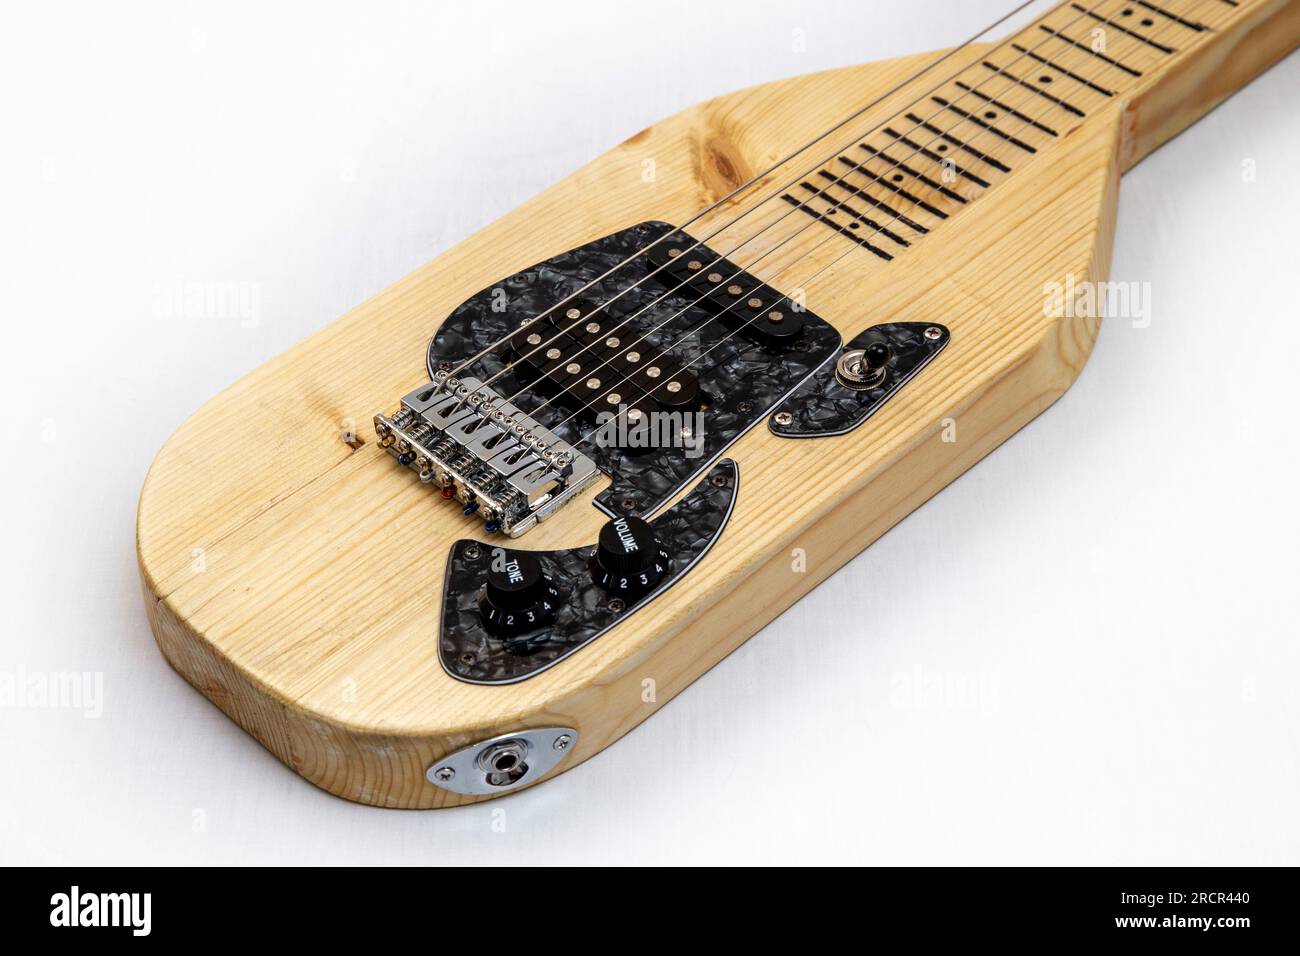 Une guitare lapsteel faite maison avec une bobine unique et des micros humbucker Banque D'Images